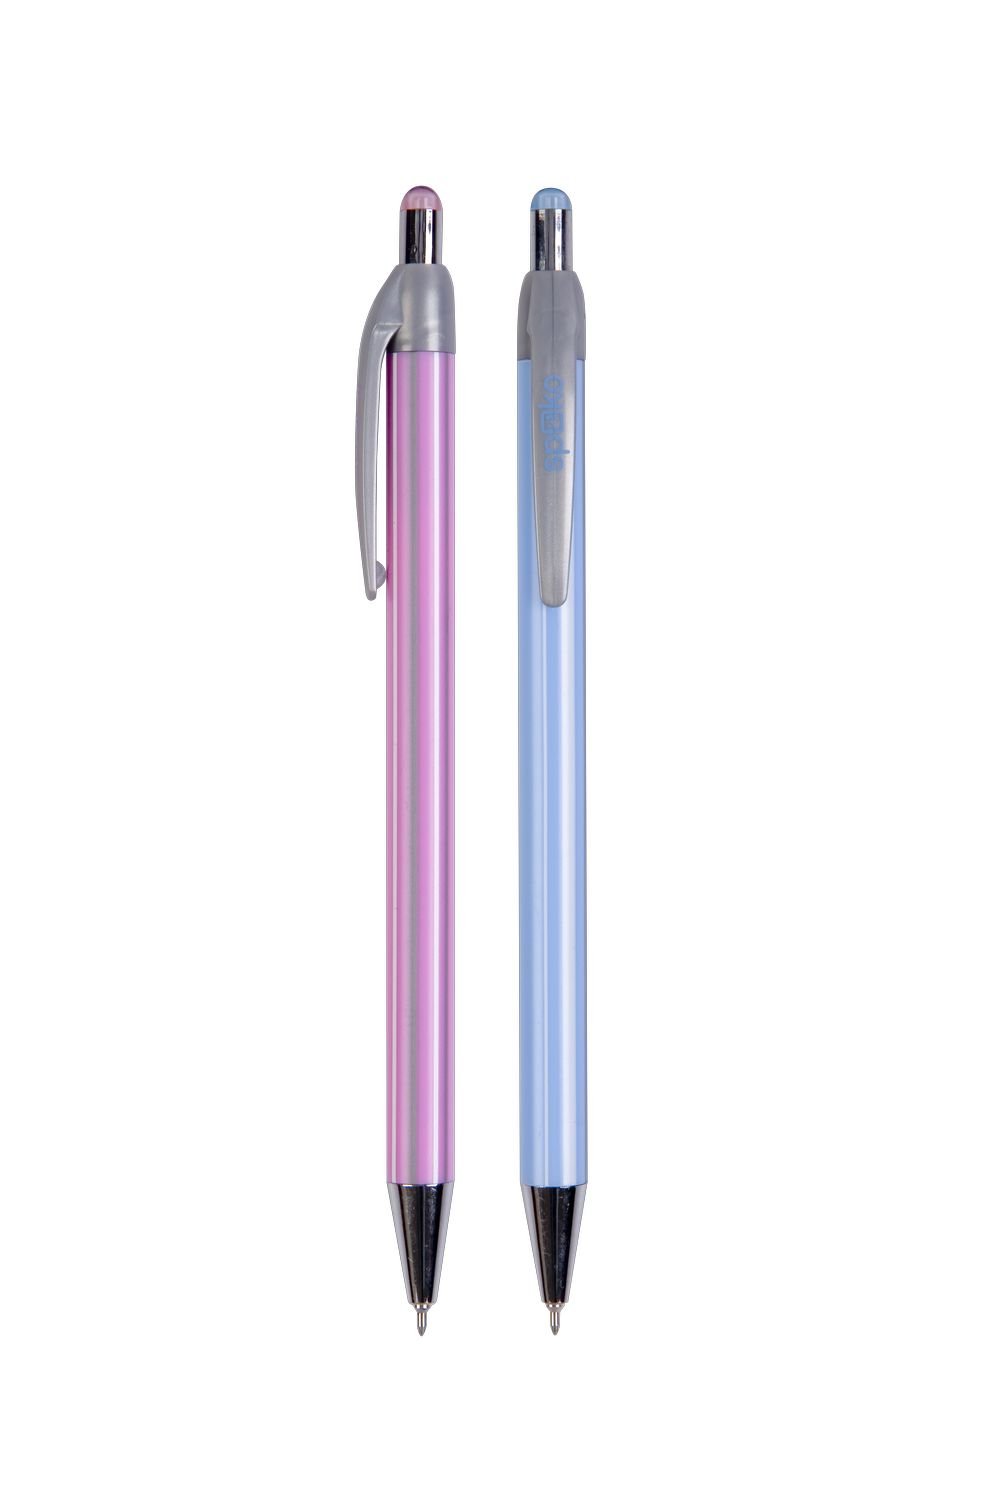 Levně Spoko Stripes kuličkové pero, Needle Tip, modrá náplň, displej, mix barev - 40ks